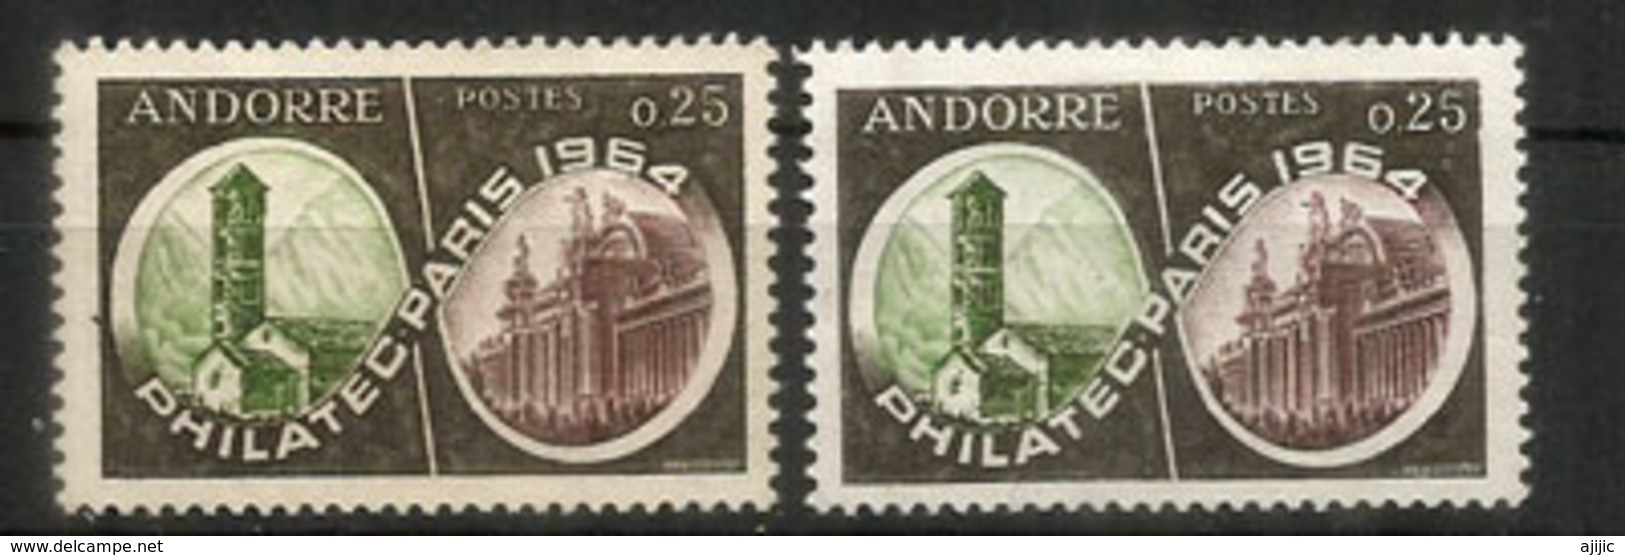 Philatec Paris 1964 Variété: Clocher Roman & Grand Palais Paris Different Tons De Couleurs - Unused Stamps